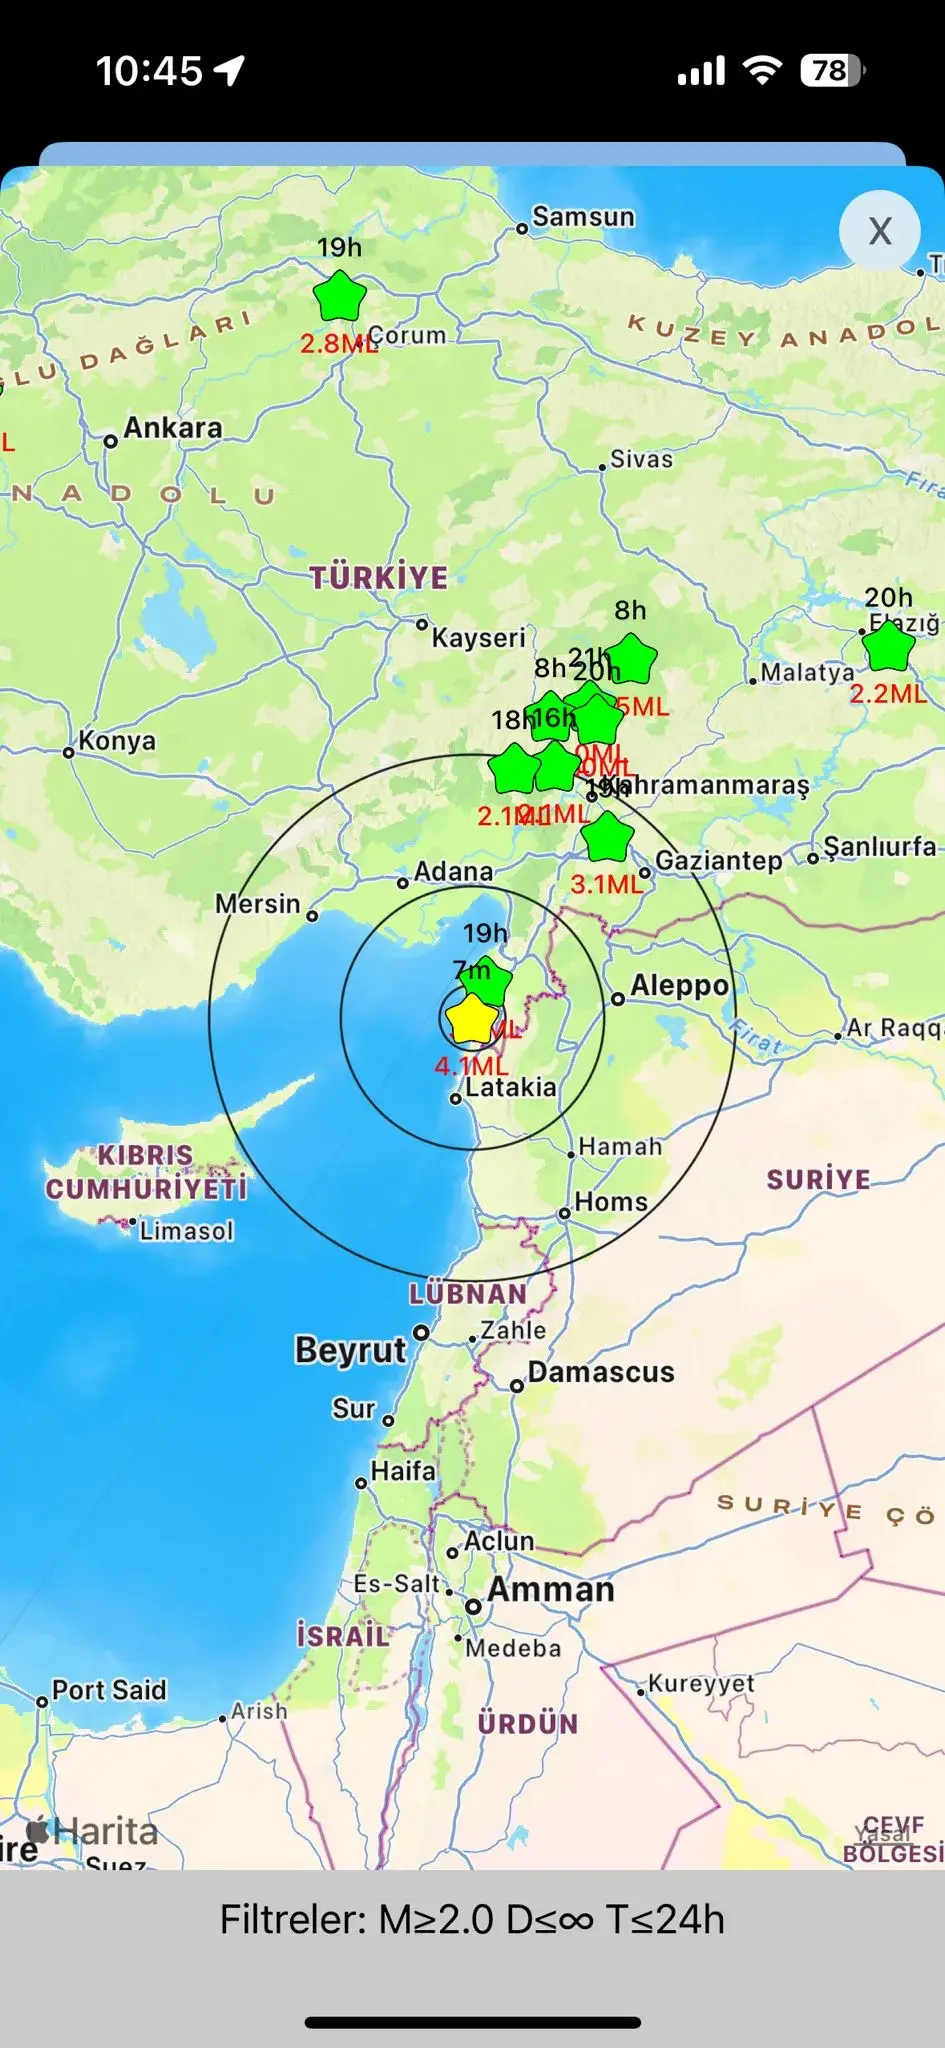 Son dakika Hatay'da deprem mi oldu? Hatay'da kaç büyüklüğünde deprem oldu?